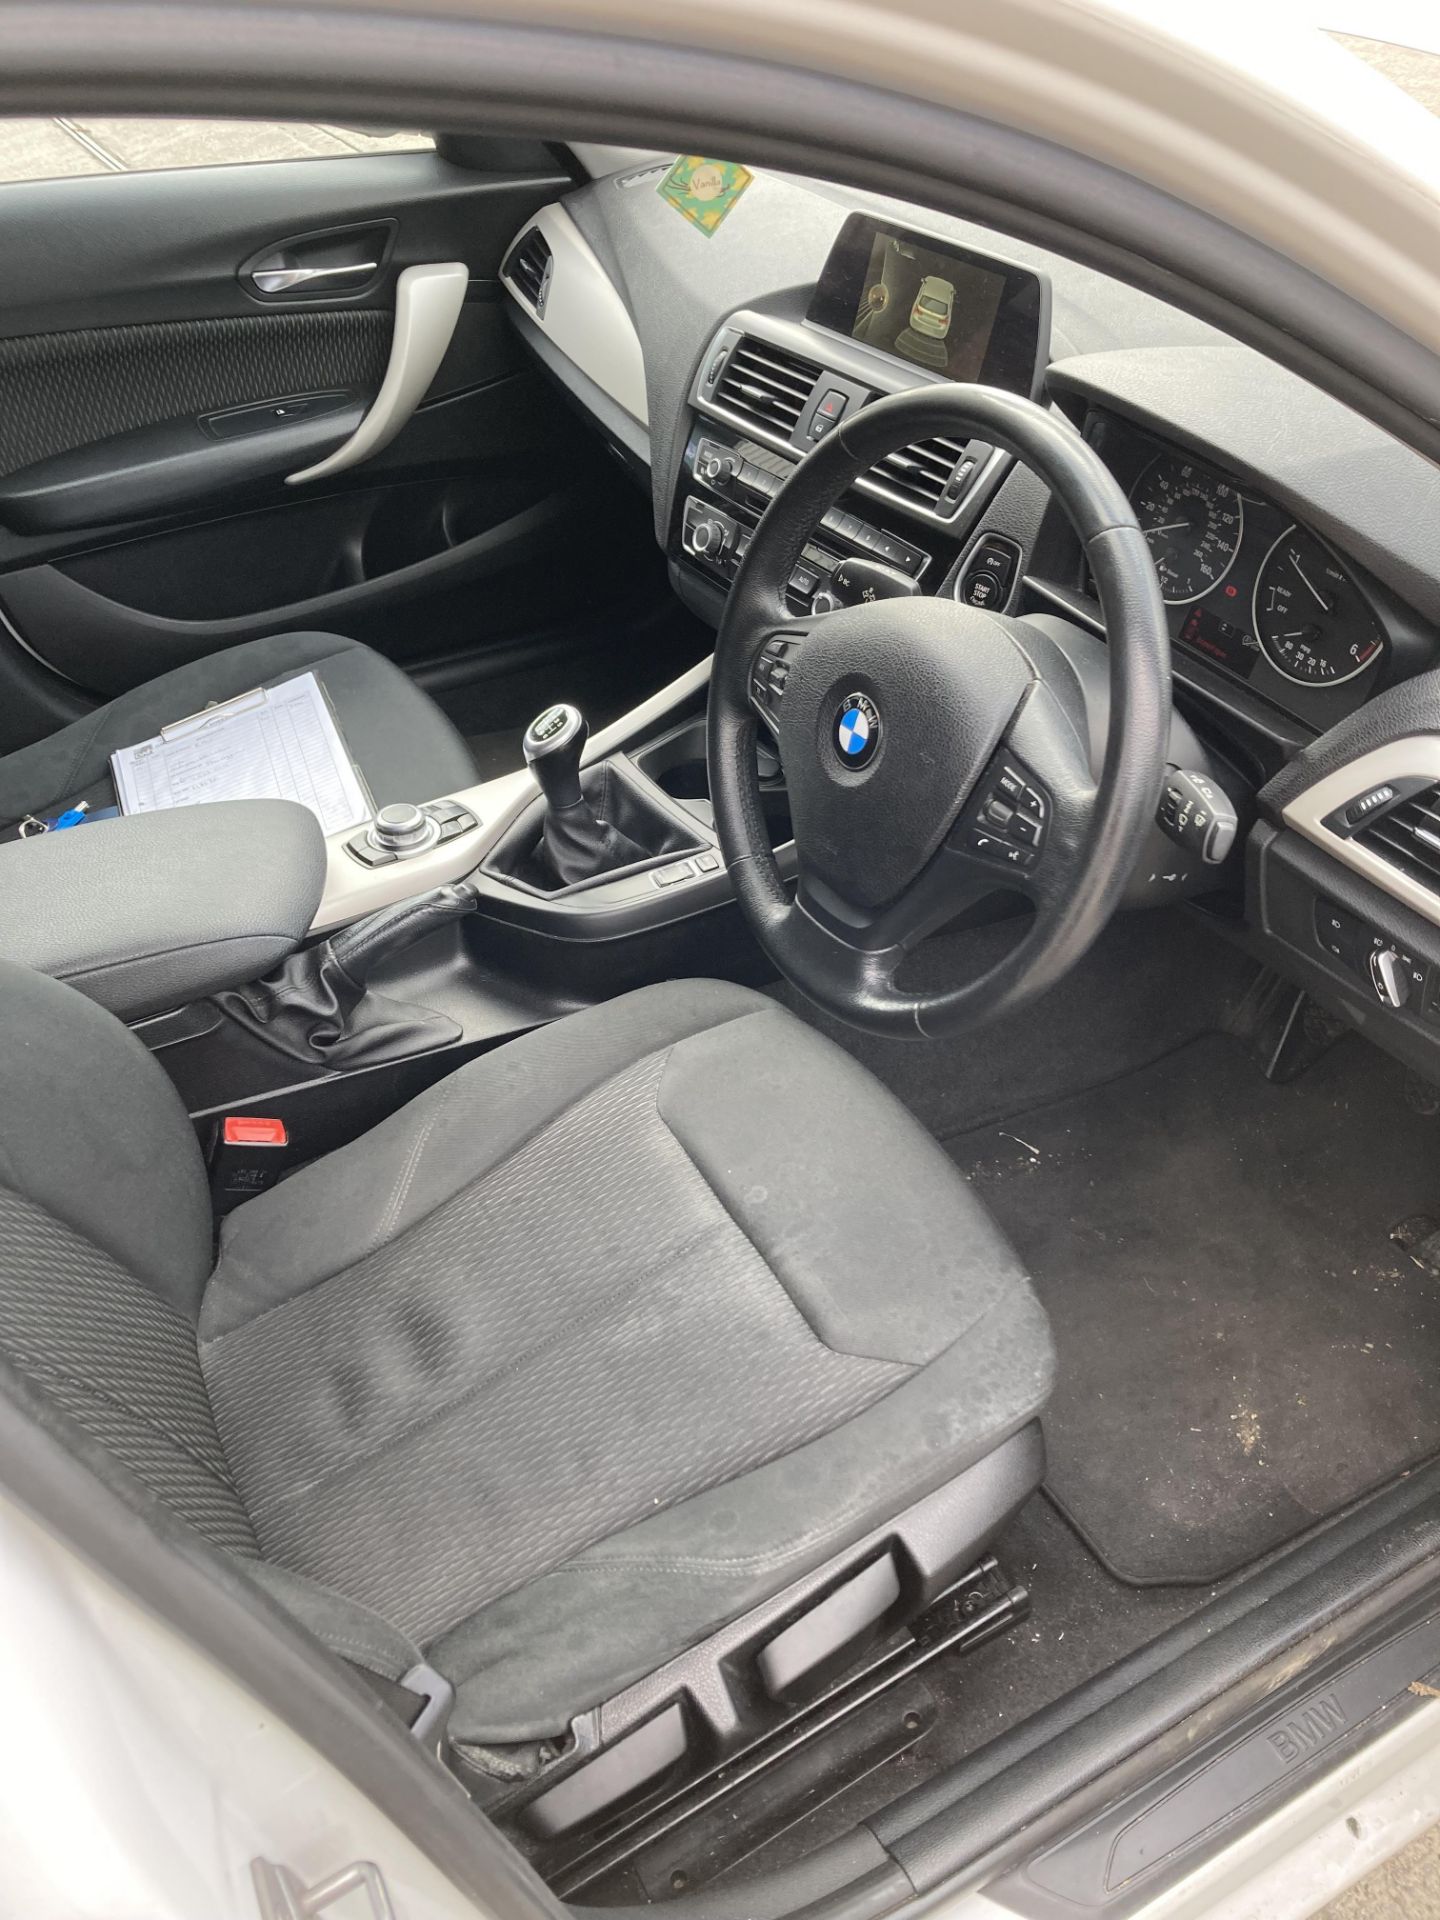 BMW 116d five door hatchback - diesel - white - dark grey cloth interior, with alloy wheels. - Image 9 of 11